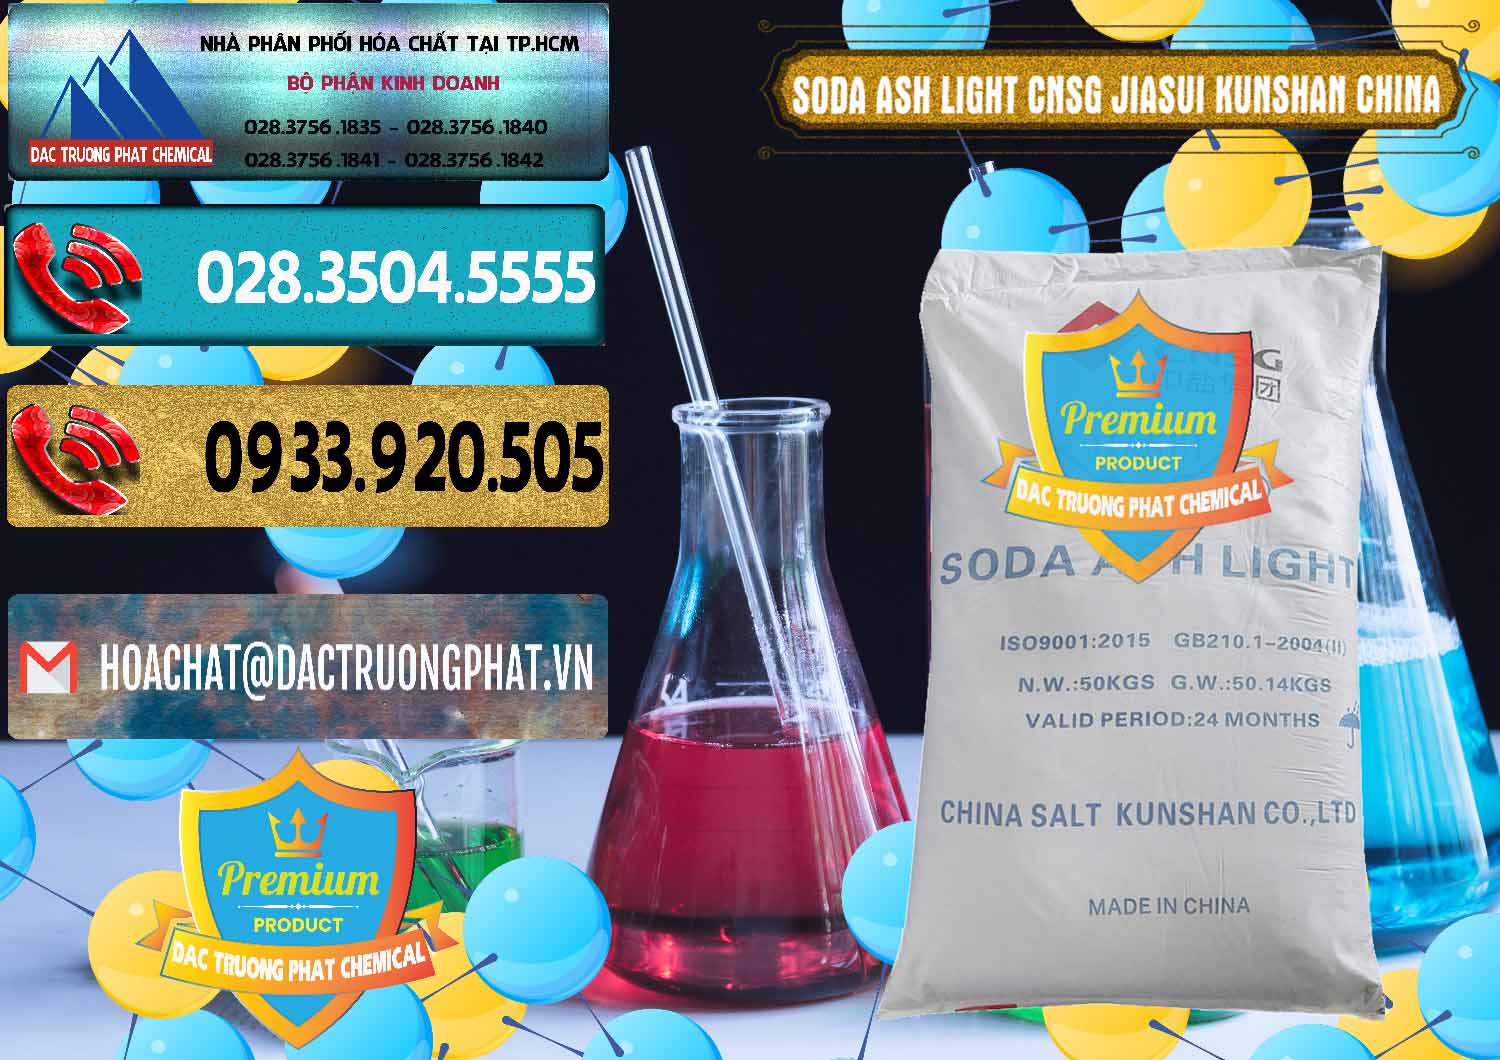 Nơi chuyên cung ứng & bán Soda Ash Light - NA2CO3 99.2% CNSG Jiasui Kunshan Trung Quốc China - 0252 - Đơn vị phân phối - bán hóa chất tại TP.HCM - hoachatdetnhuom.com